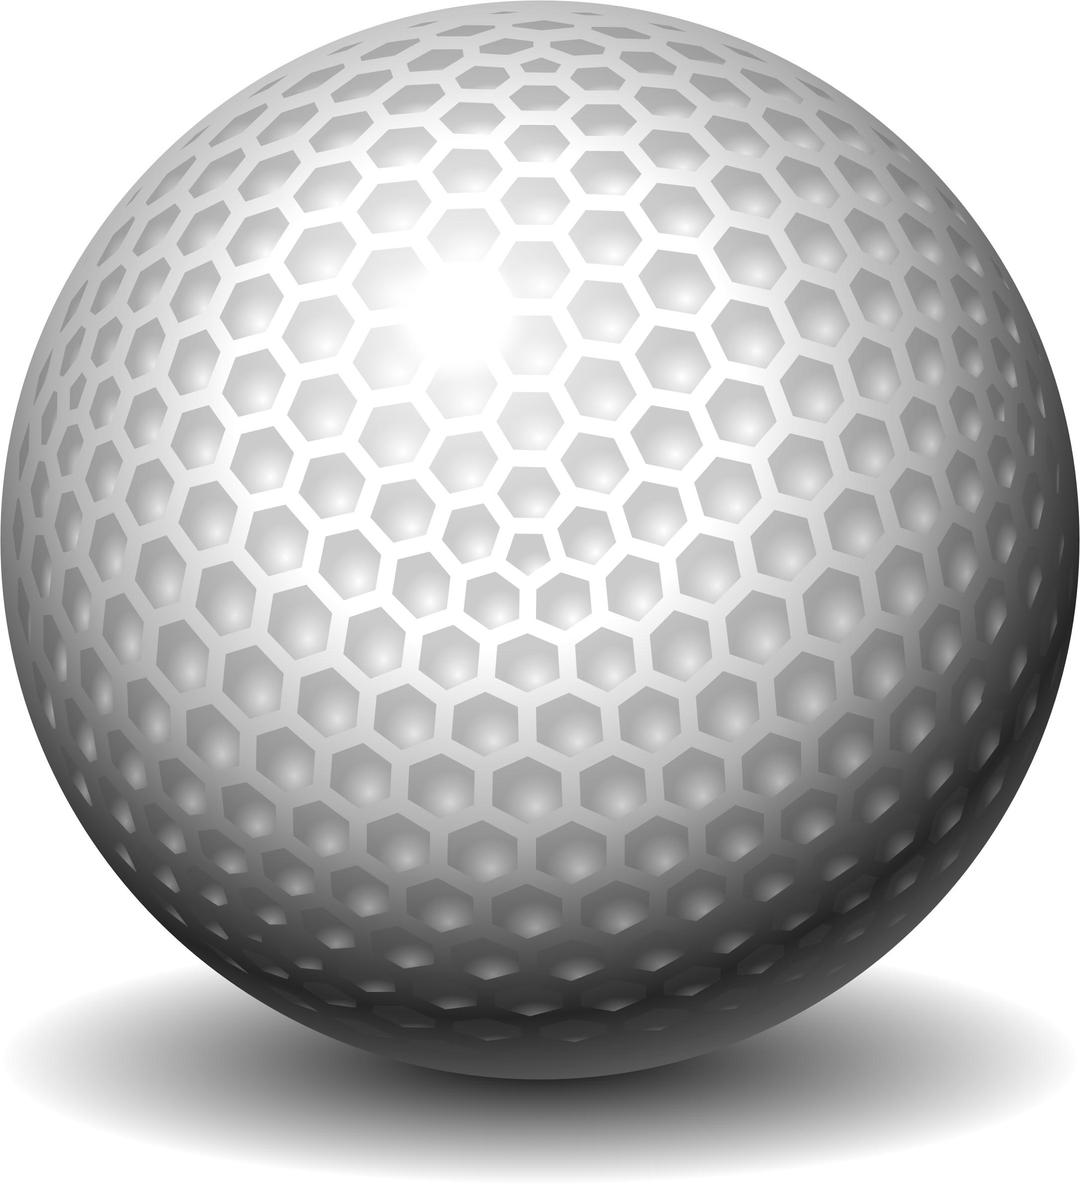 golf-ball, golfo kamuoliukas png transparent